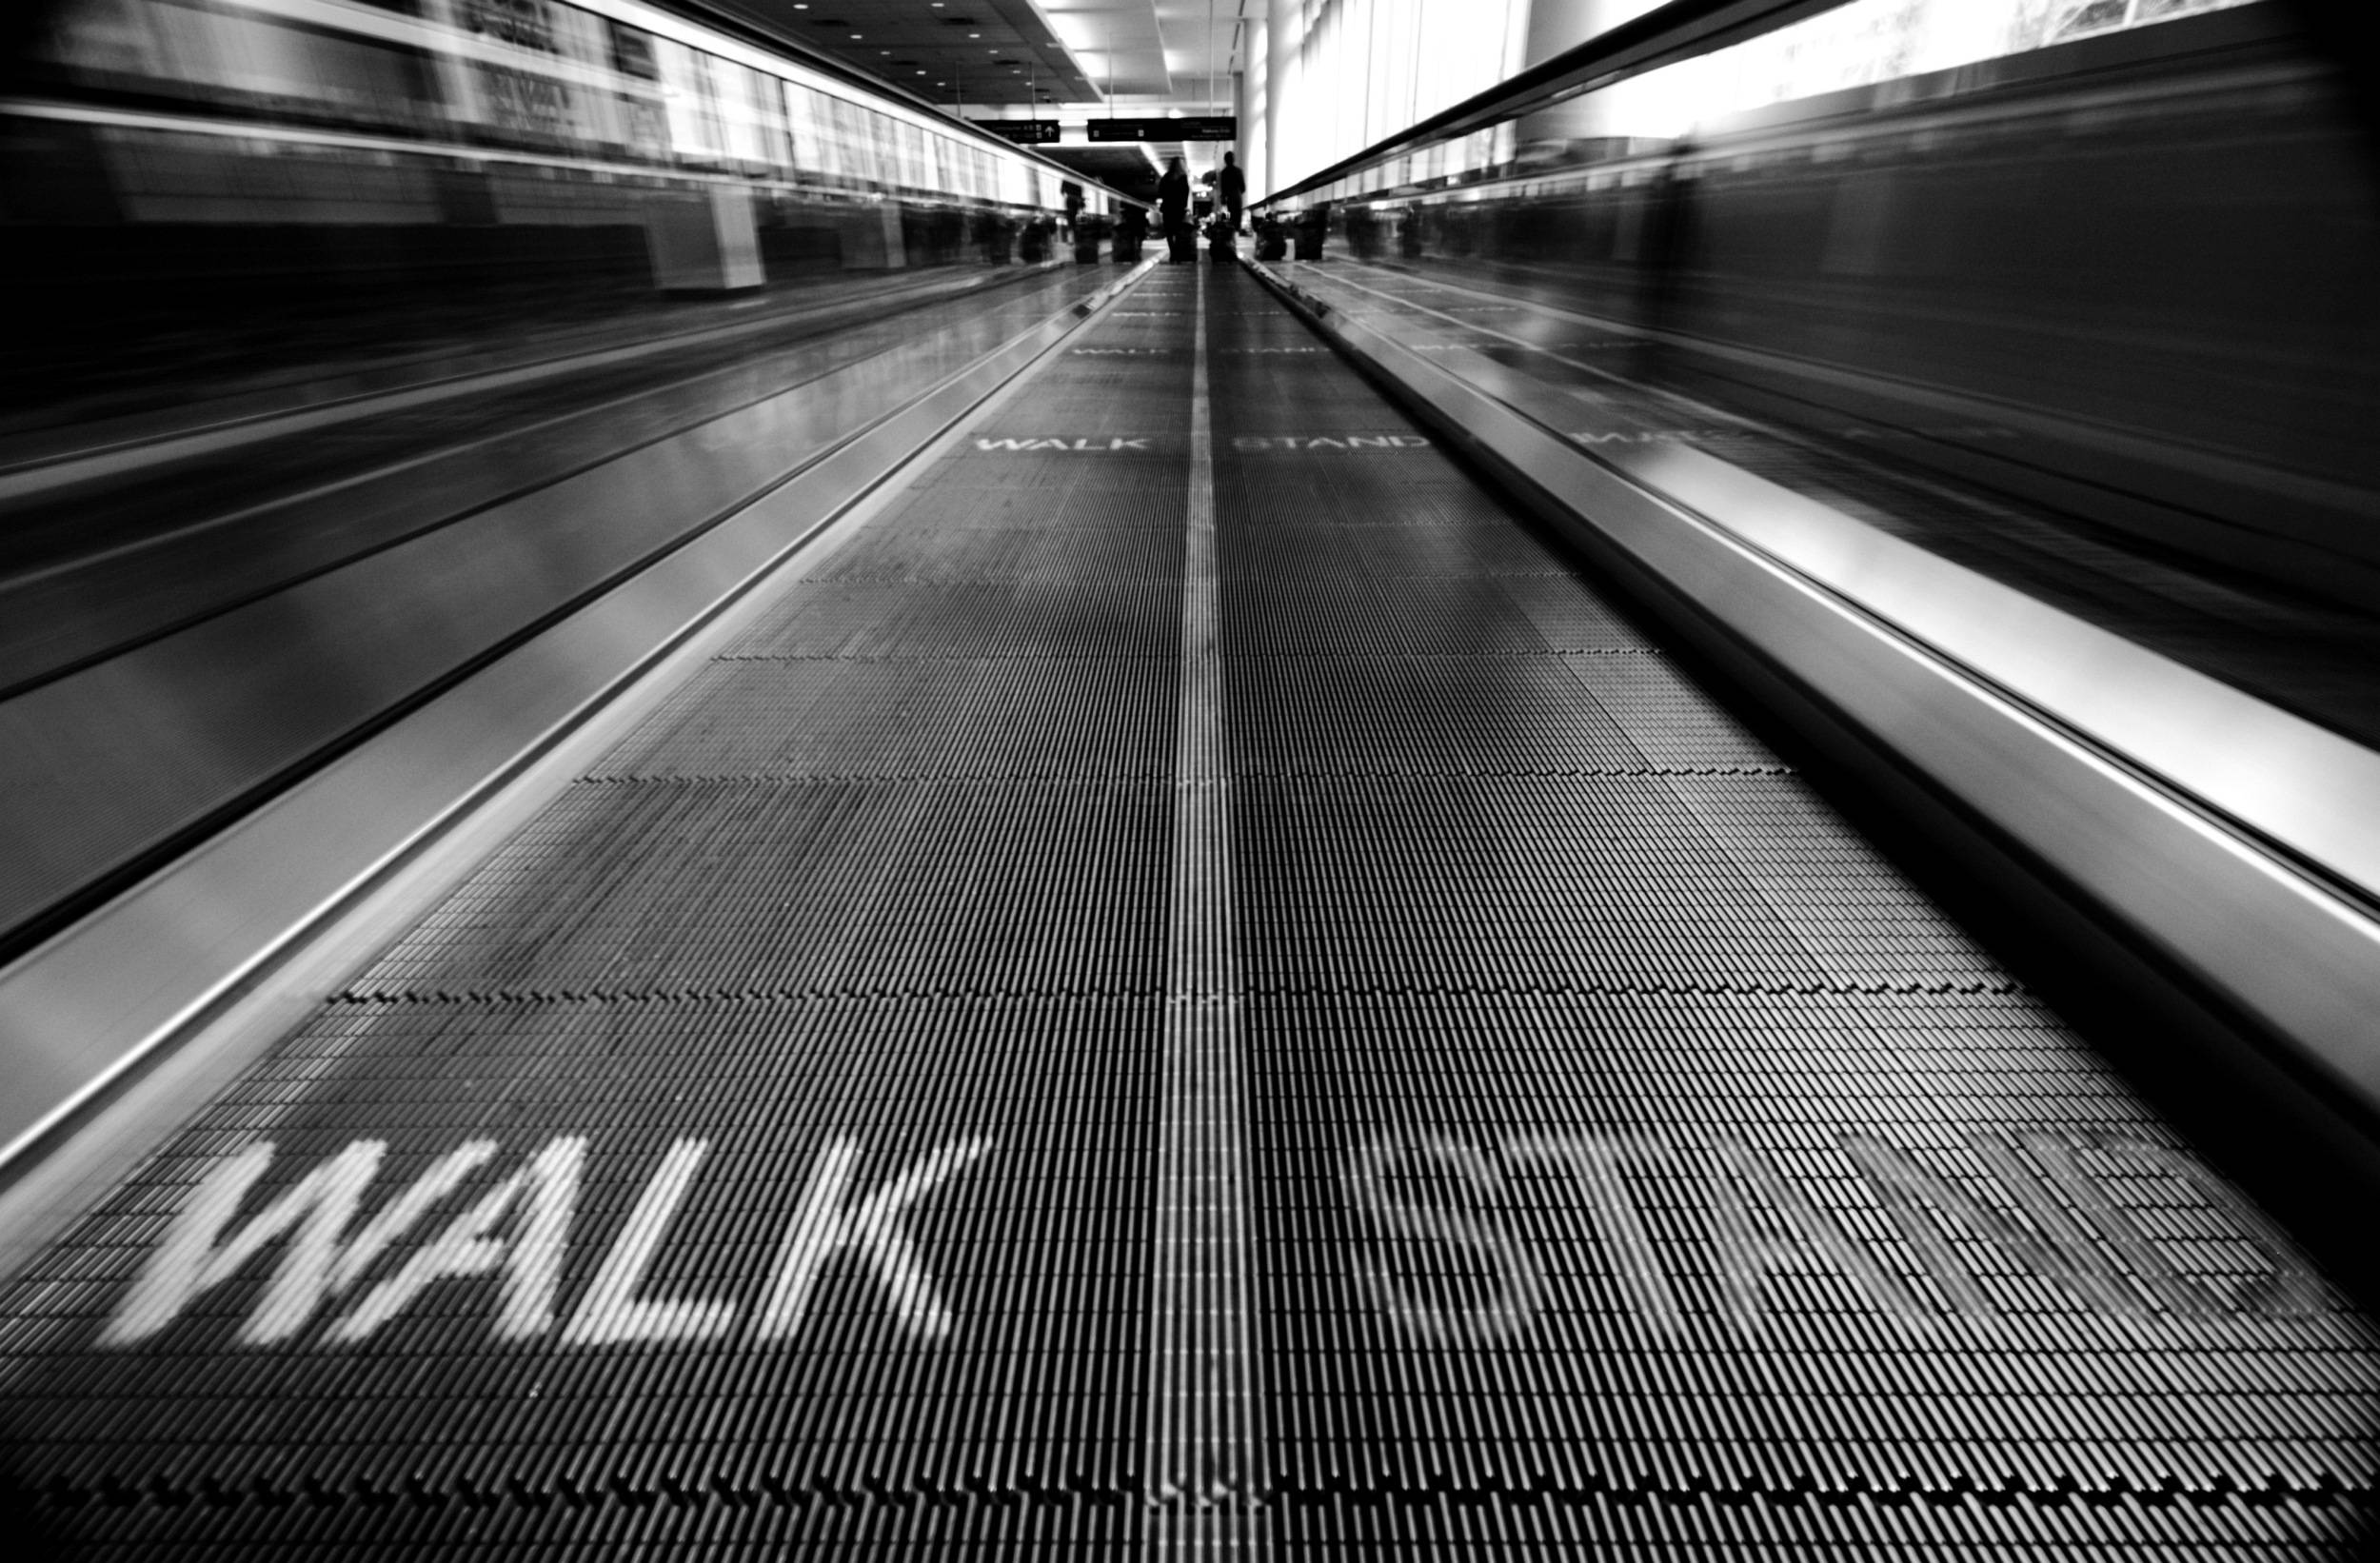 Walk Stand — 2011-05-02 08:55:57 — © eppbphoto.com